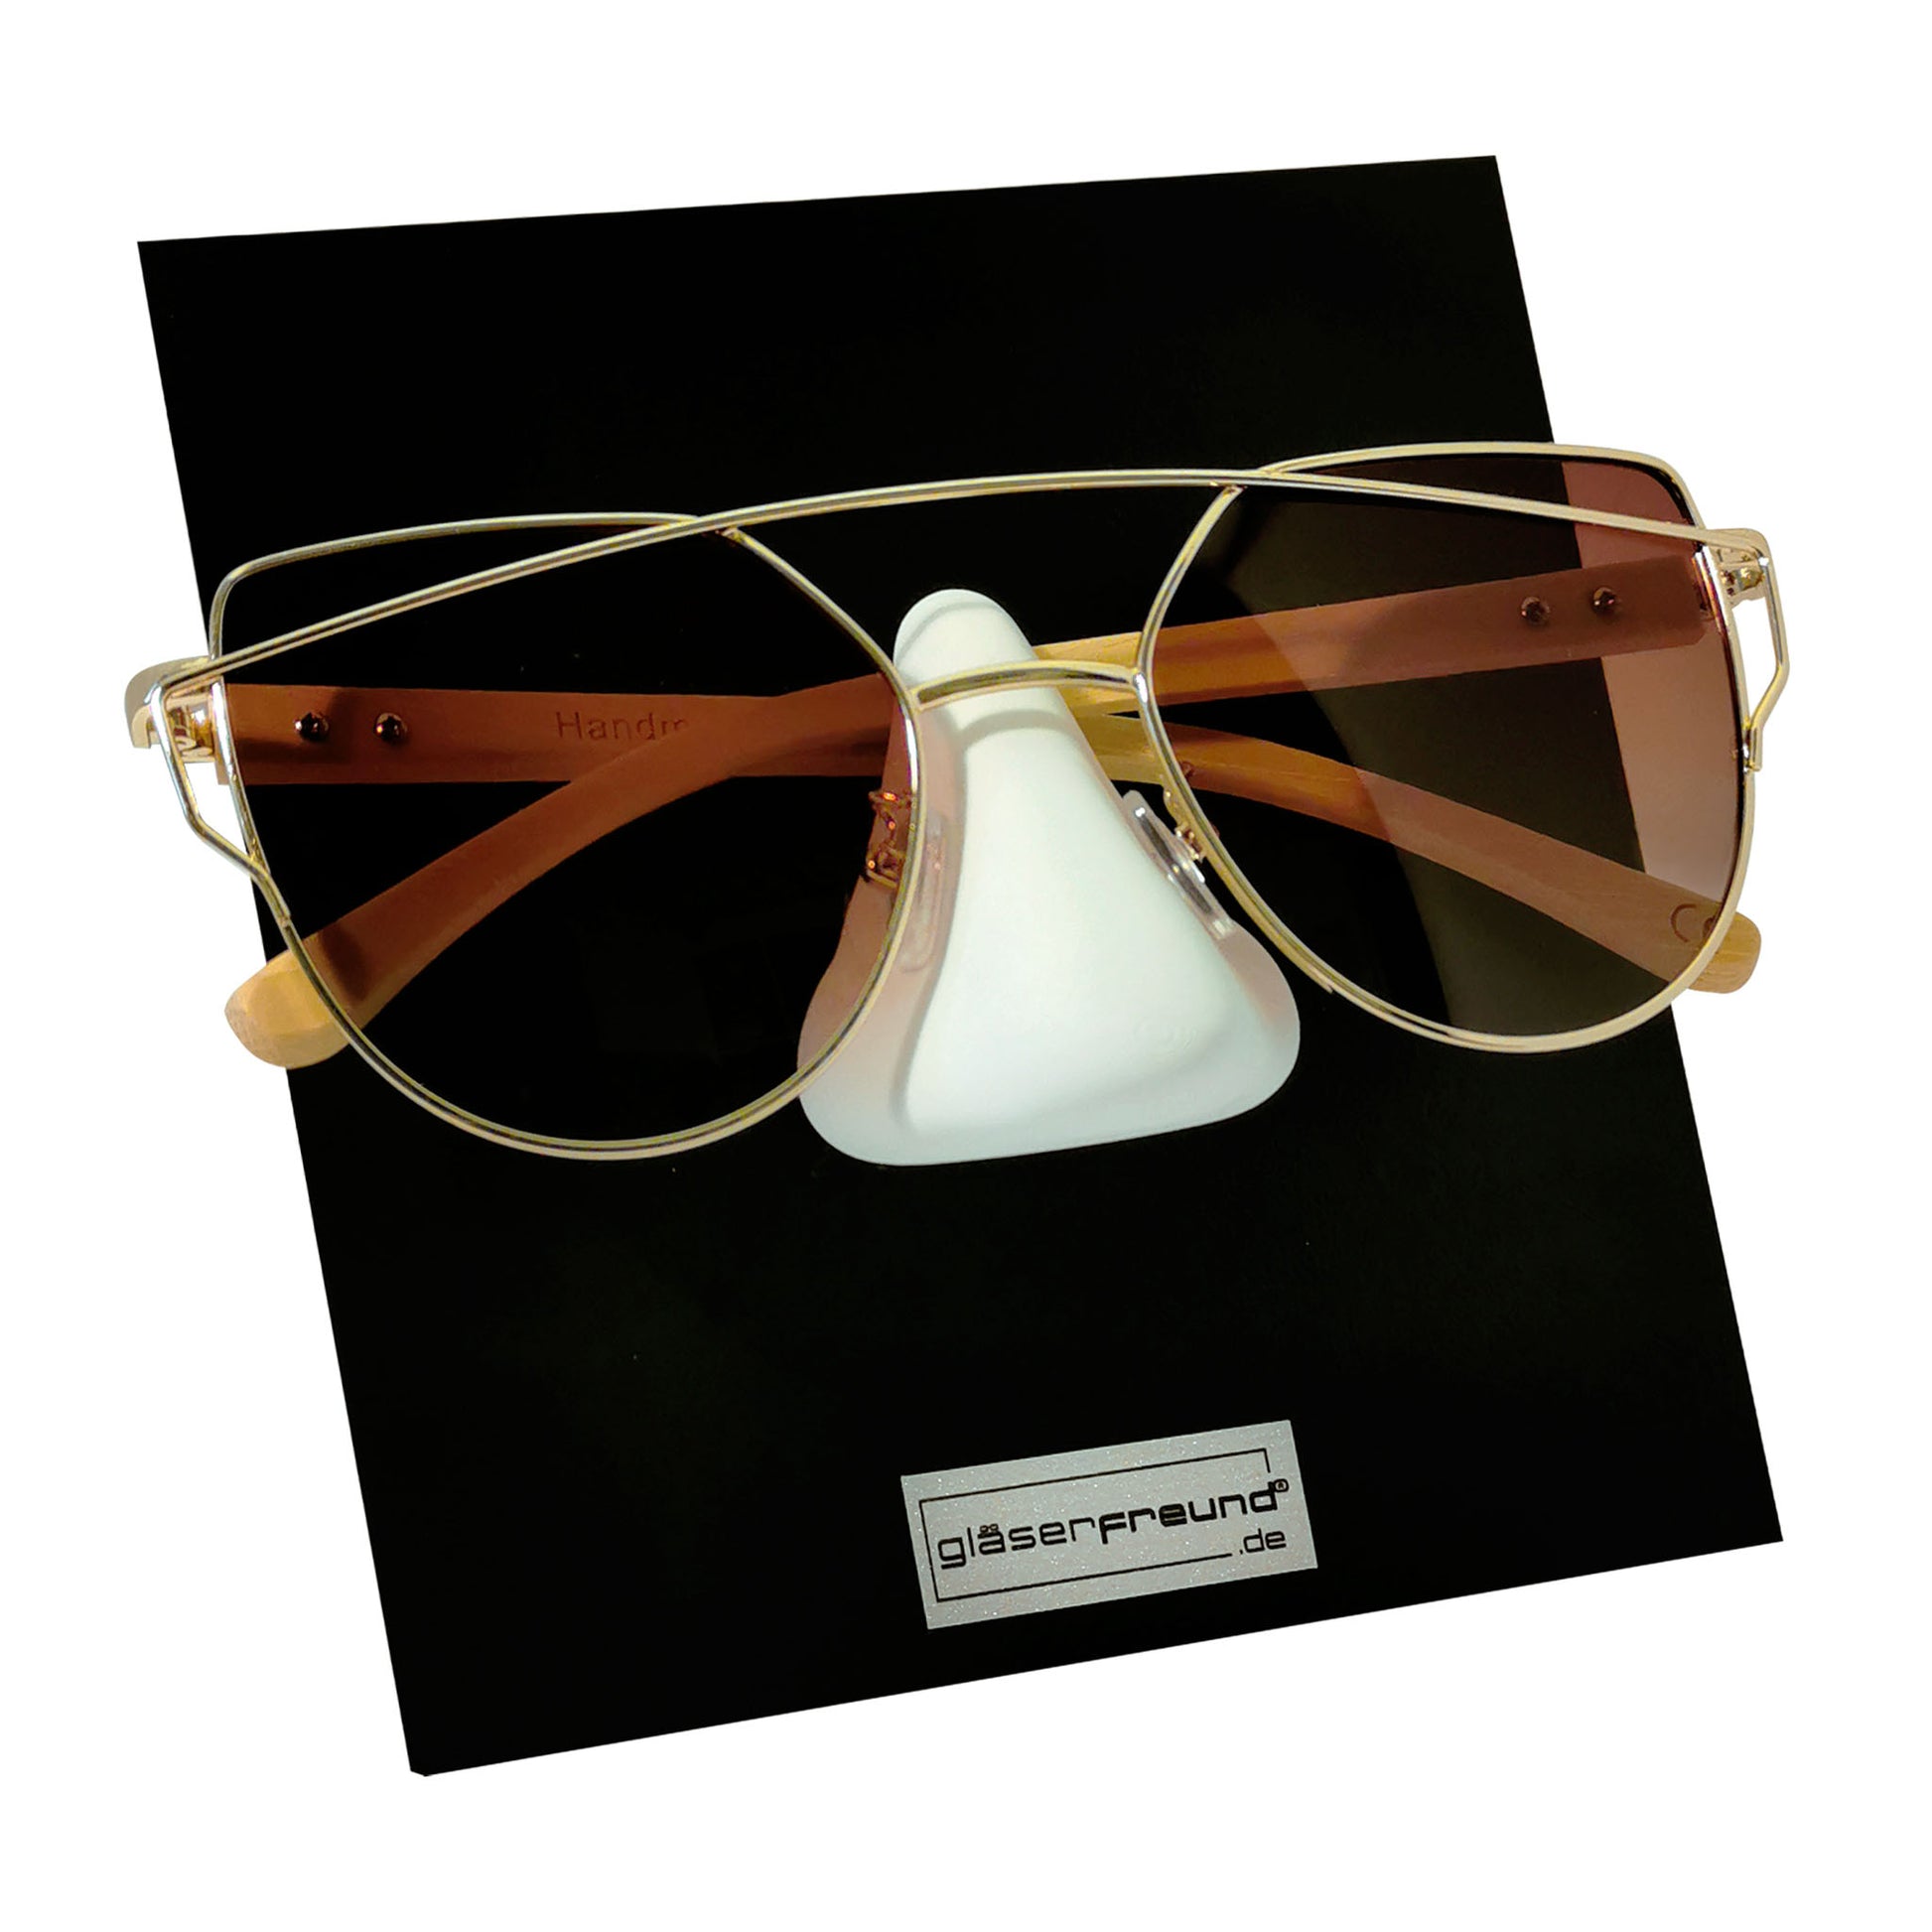 Frame black Brillenorganizer aus Holz für eine Brille – gläserfreund®